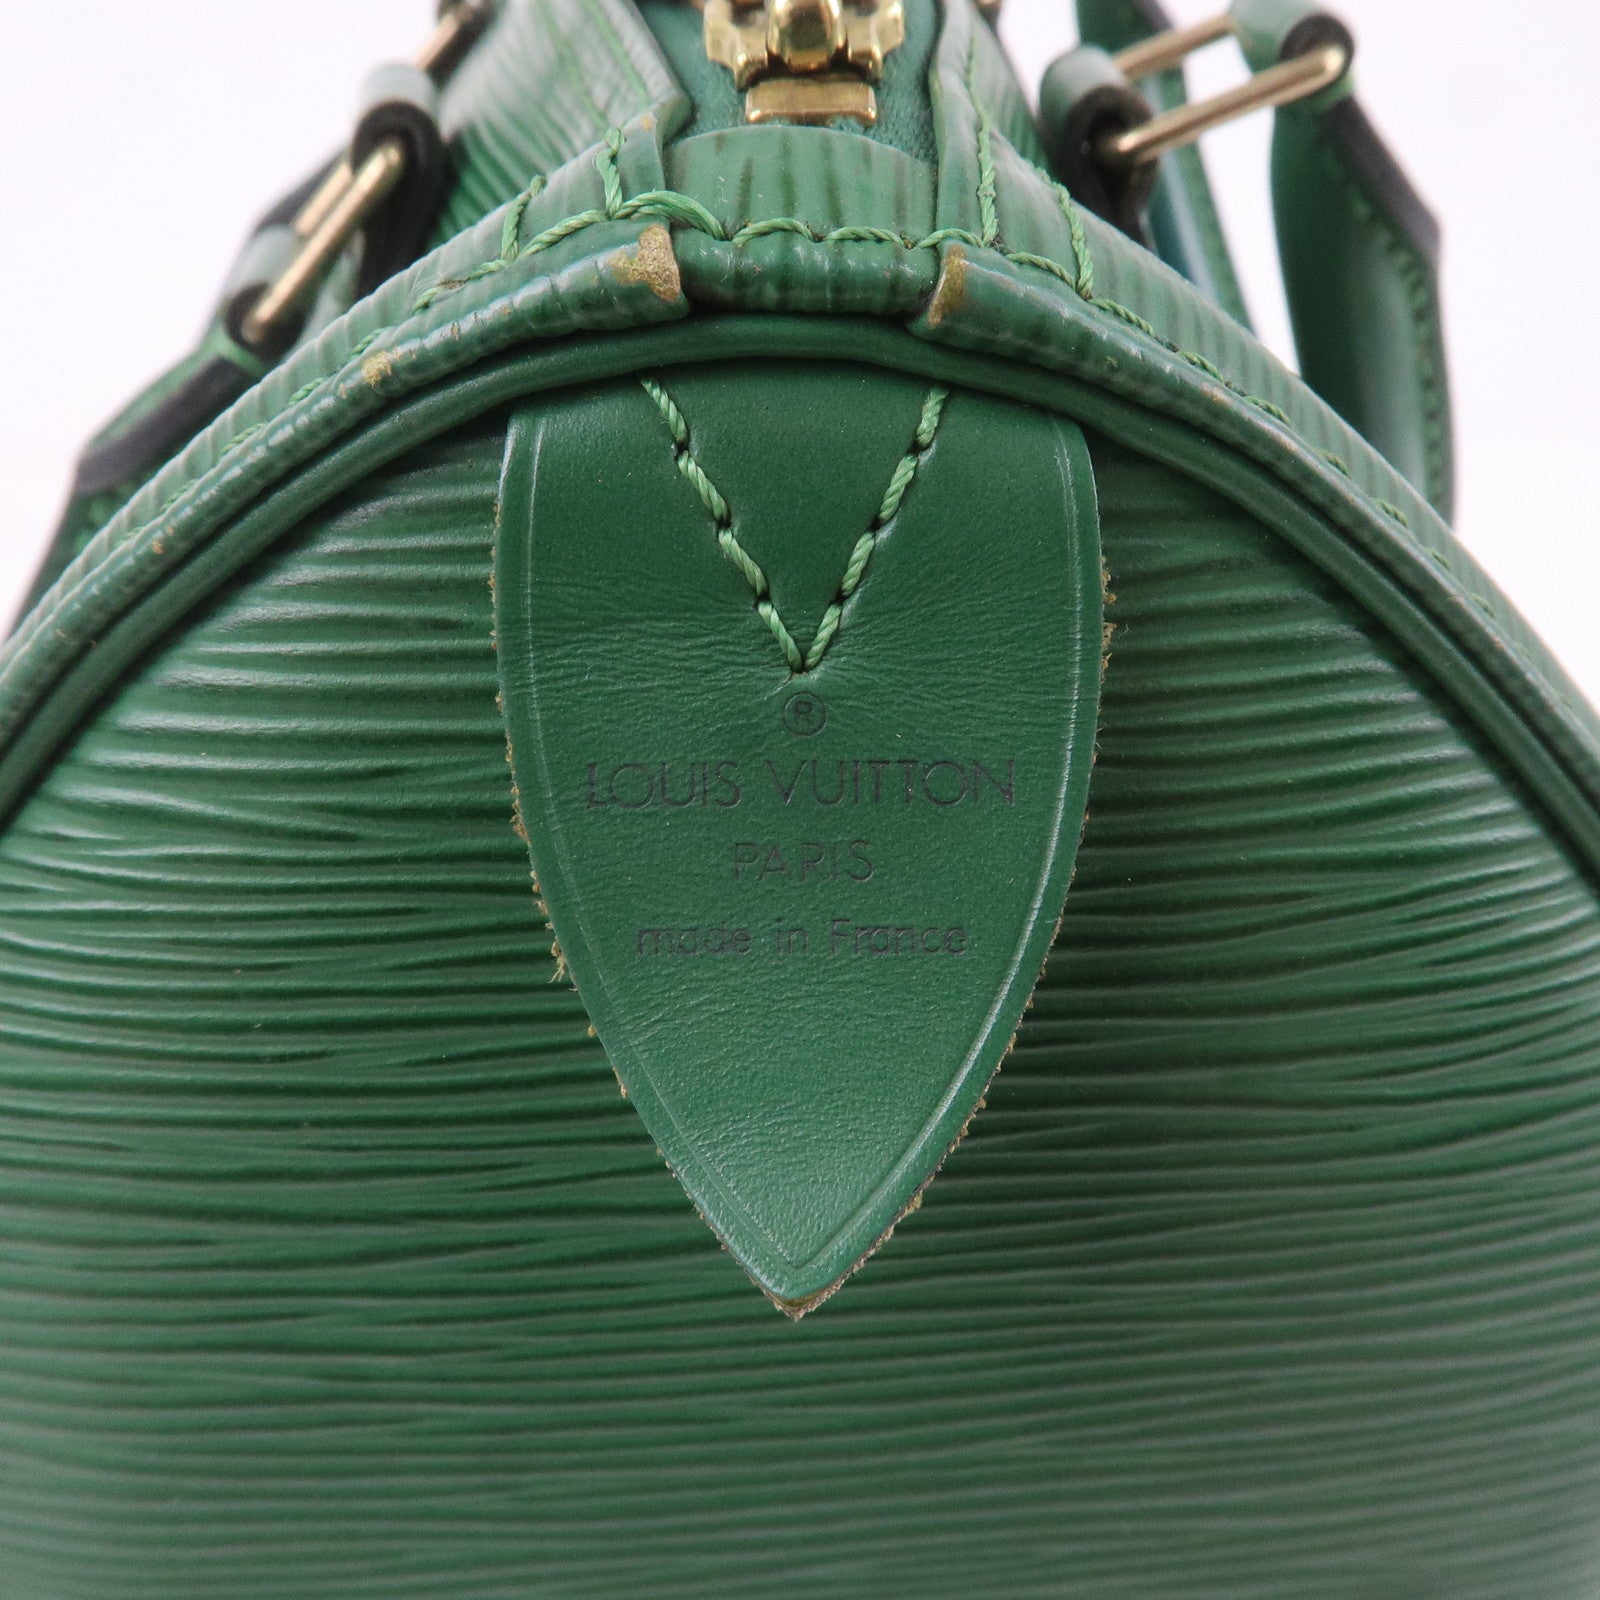 Louis-Vuitton Epi Speedy-25-Hand Boston Bag